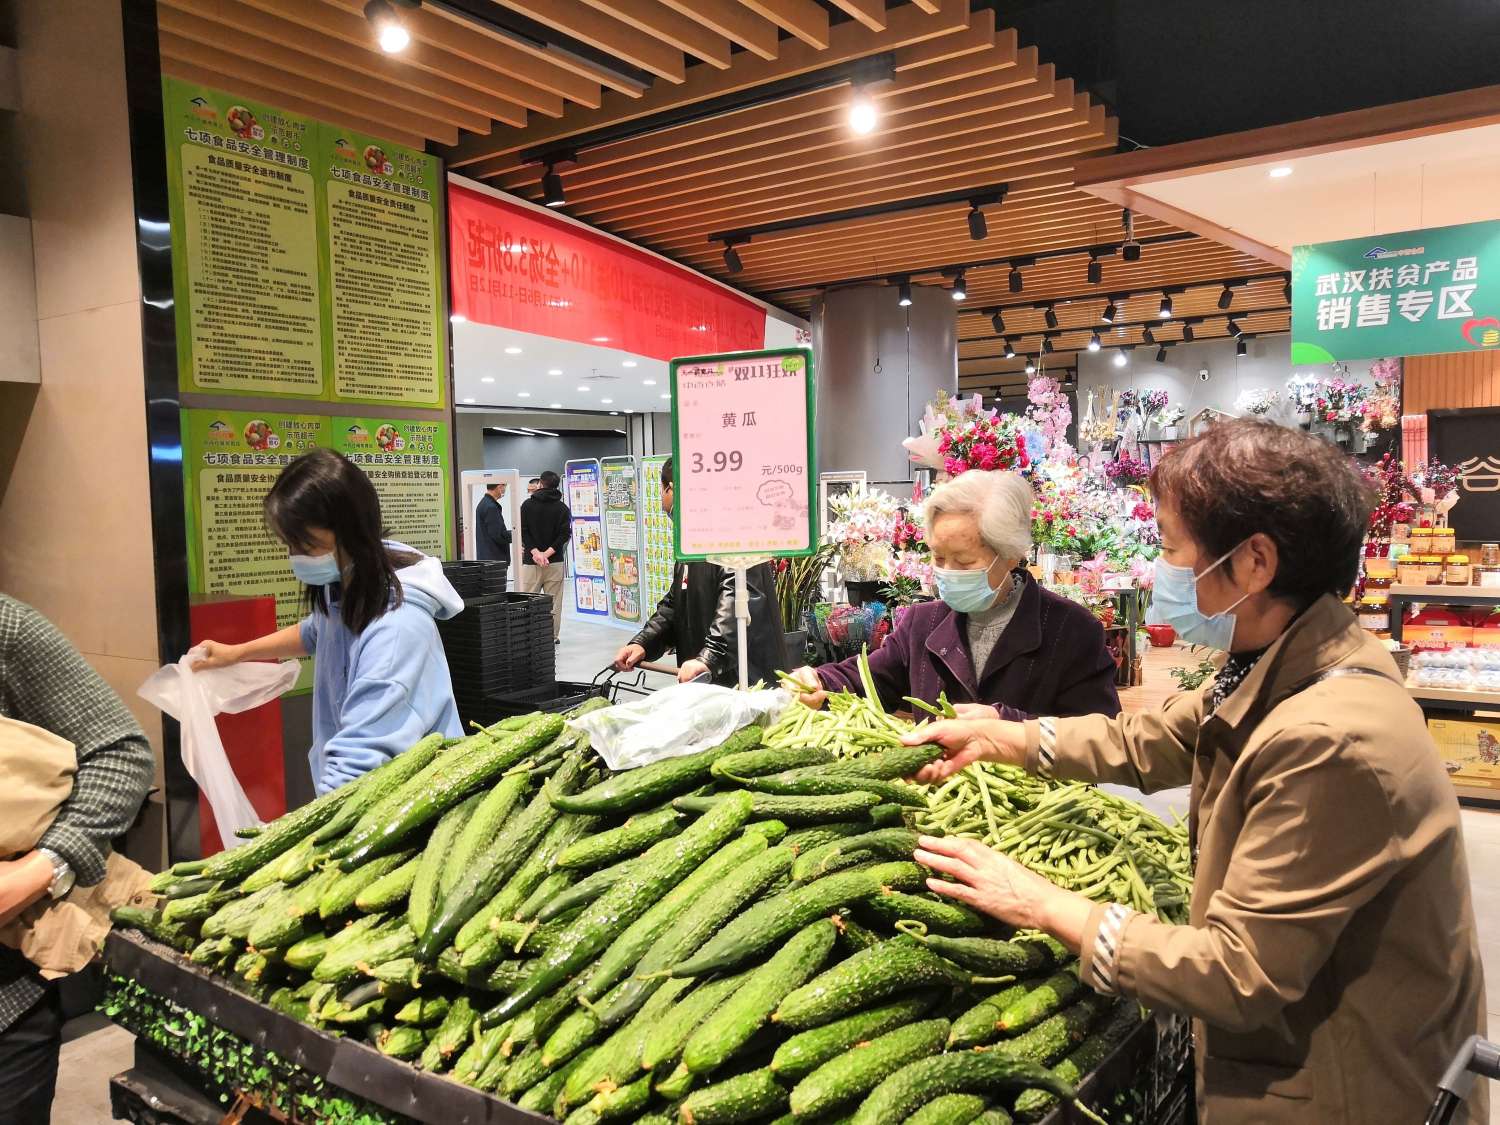 消费券核销叠加降价促销,武汉超市现场好热闹